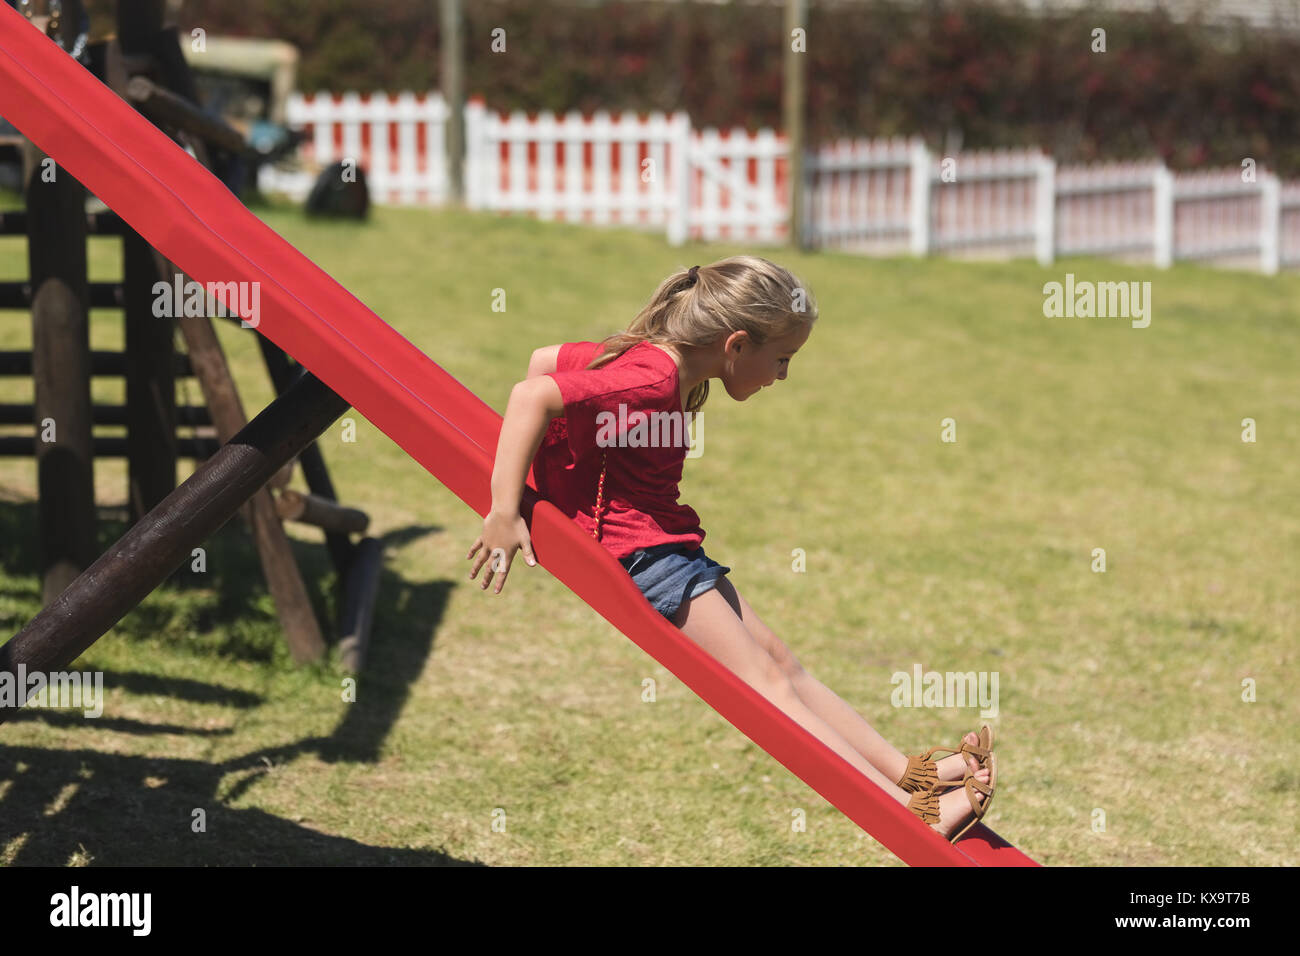 Girl sliding on slide in playground Stock Photo